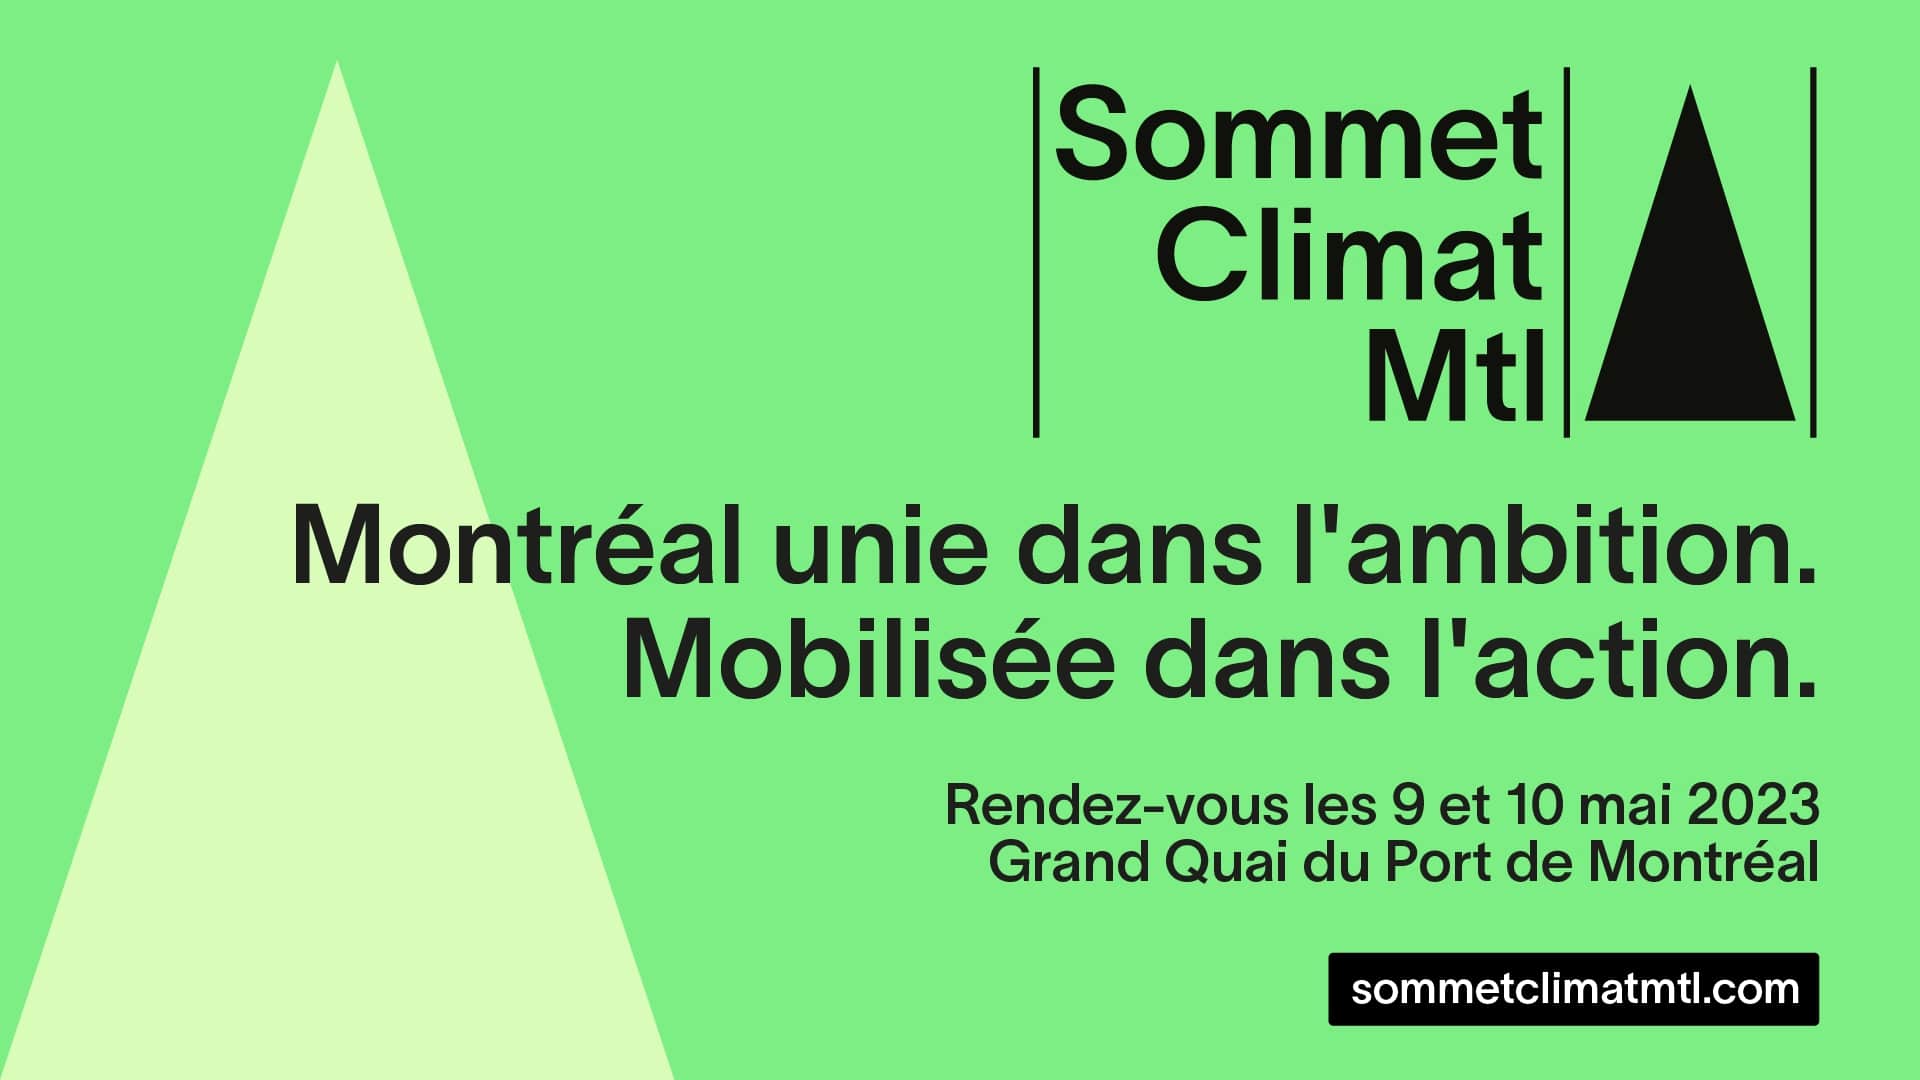 Sommet Climat Montréal 2023 - Identité graphique 2023 - Montréal unie dans l'ambition, mobilisée dans l'action